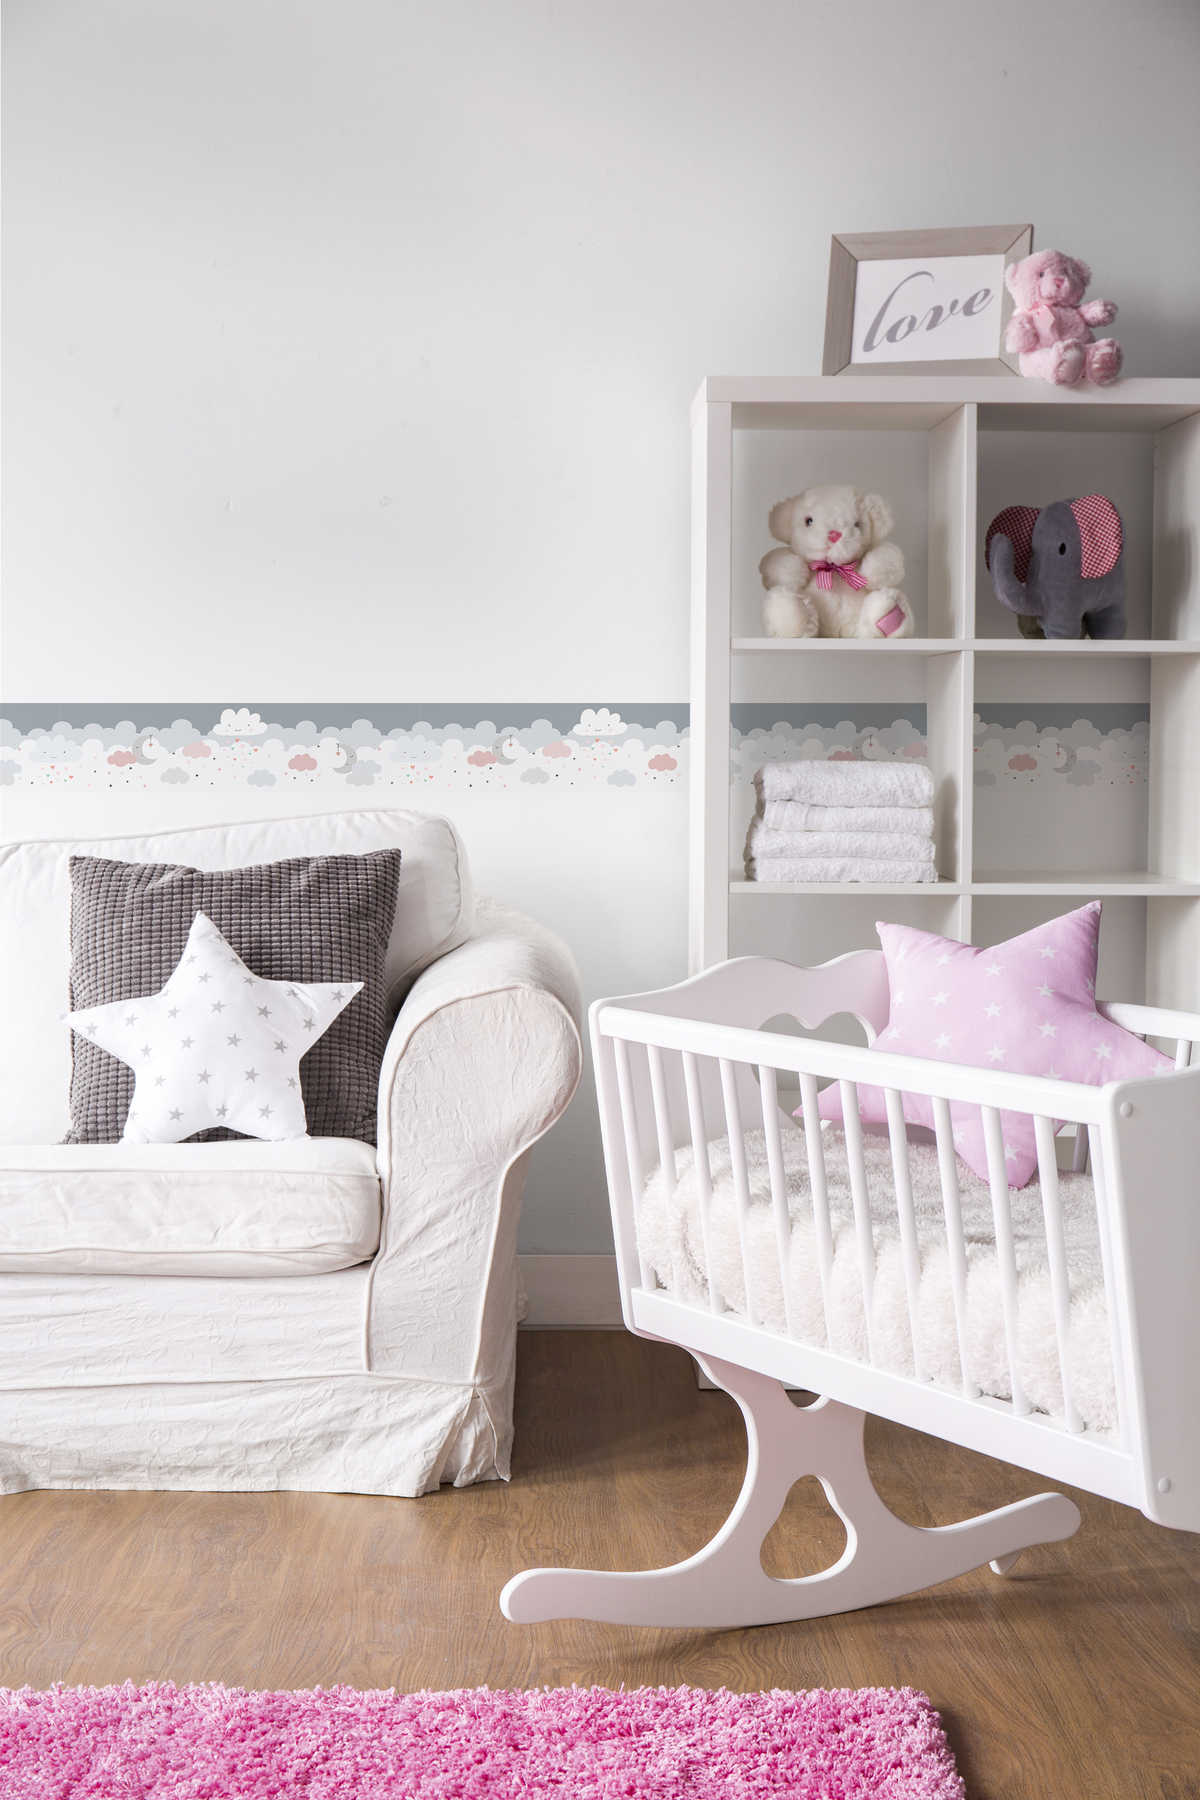             Borde autoadhesivo para habitación de bebé "Pink Sugar Clouds" - rosa, gris, blanco
        